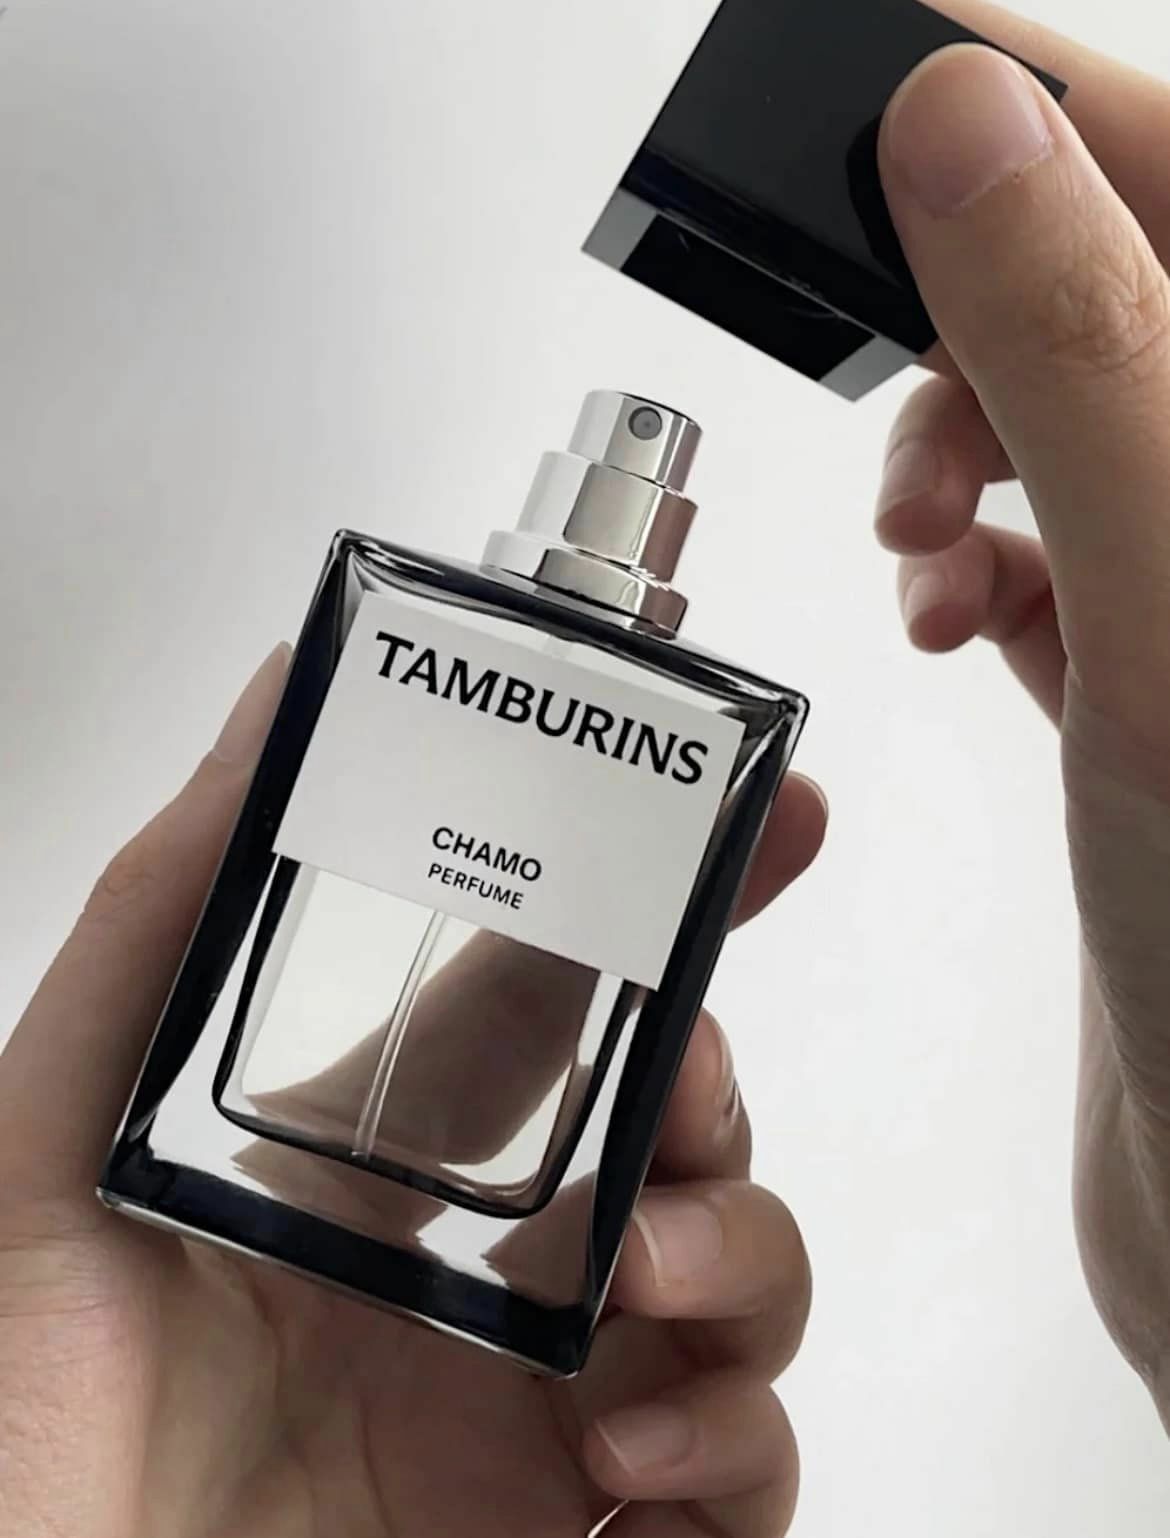 JENNIE代言韓國愛牌TAMBURINS'香水指定香味CHAMO 50ML